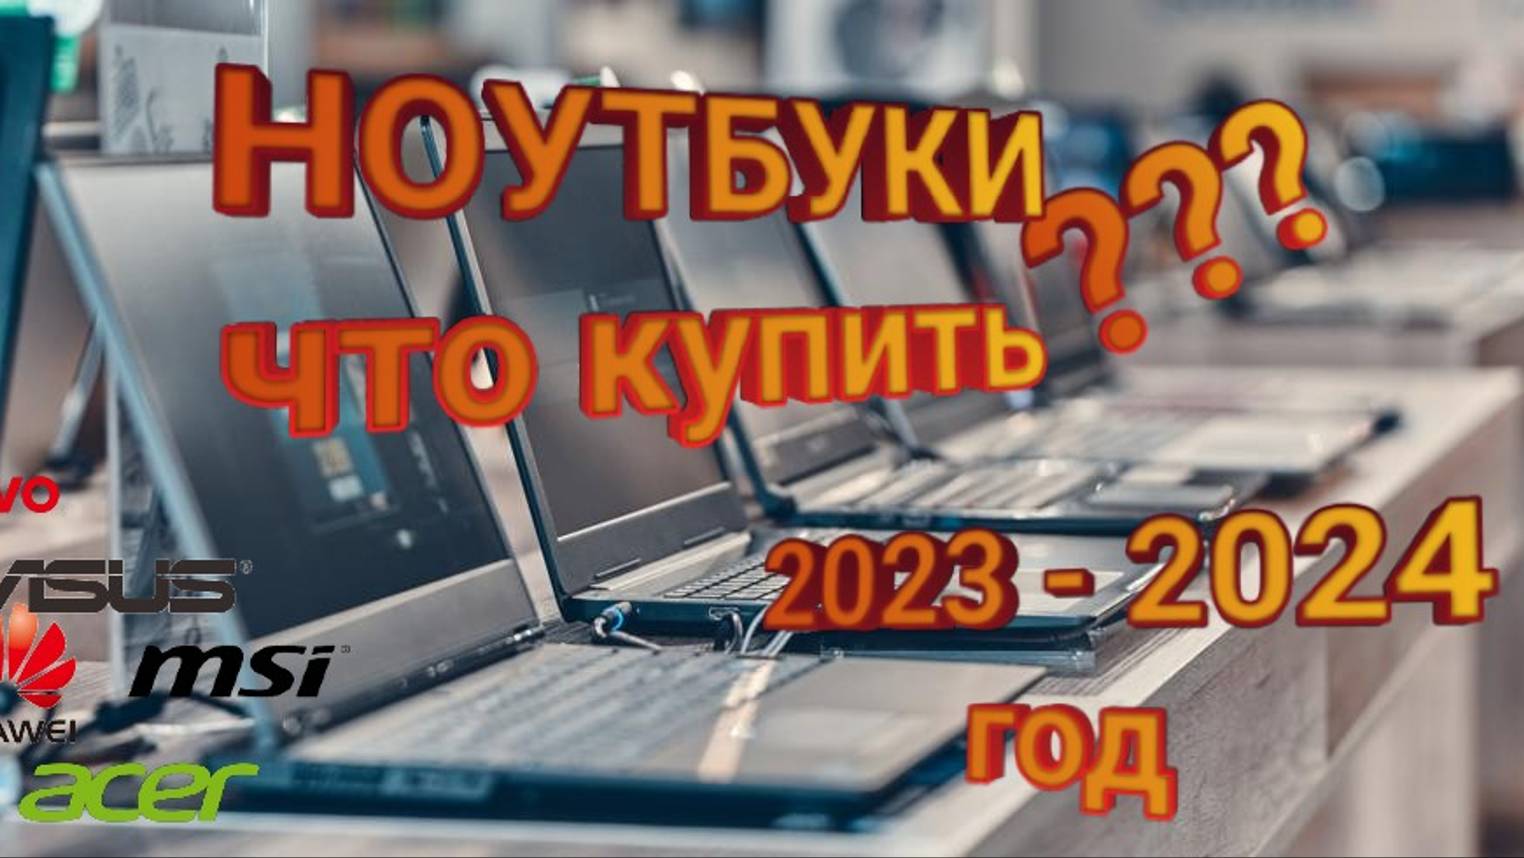 ТОП Ноутбуки до 100'000 руб. 2023 года. Лучшие ноутбуки 40 - 100 тыс. руб. ТОП ноутбуки 2023.